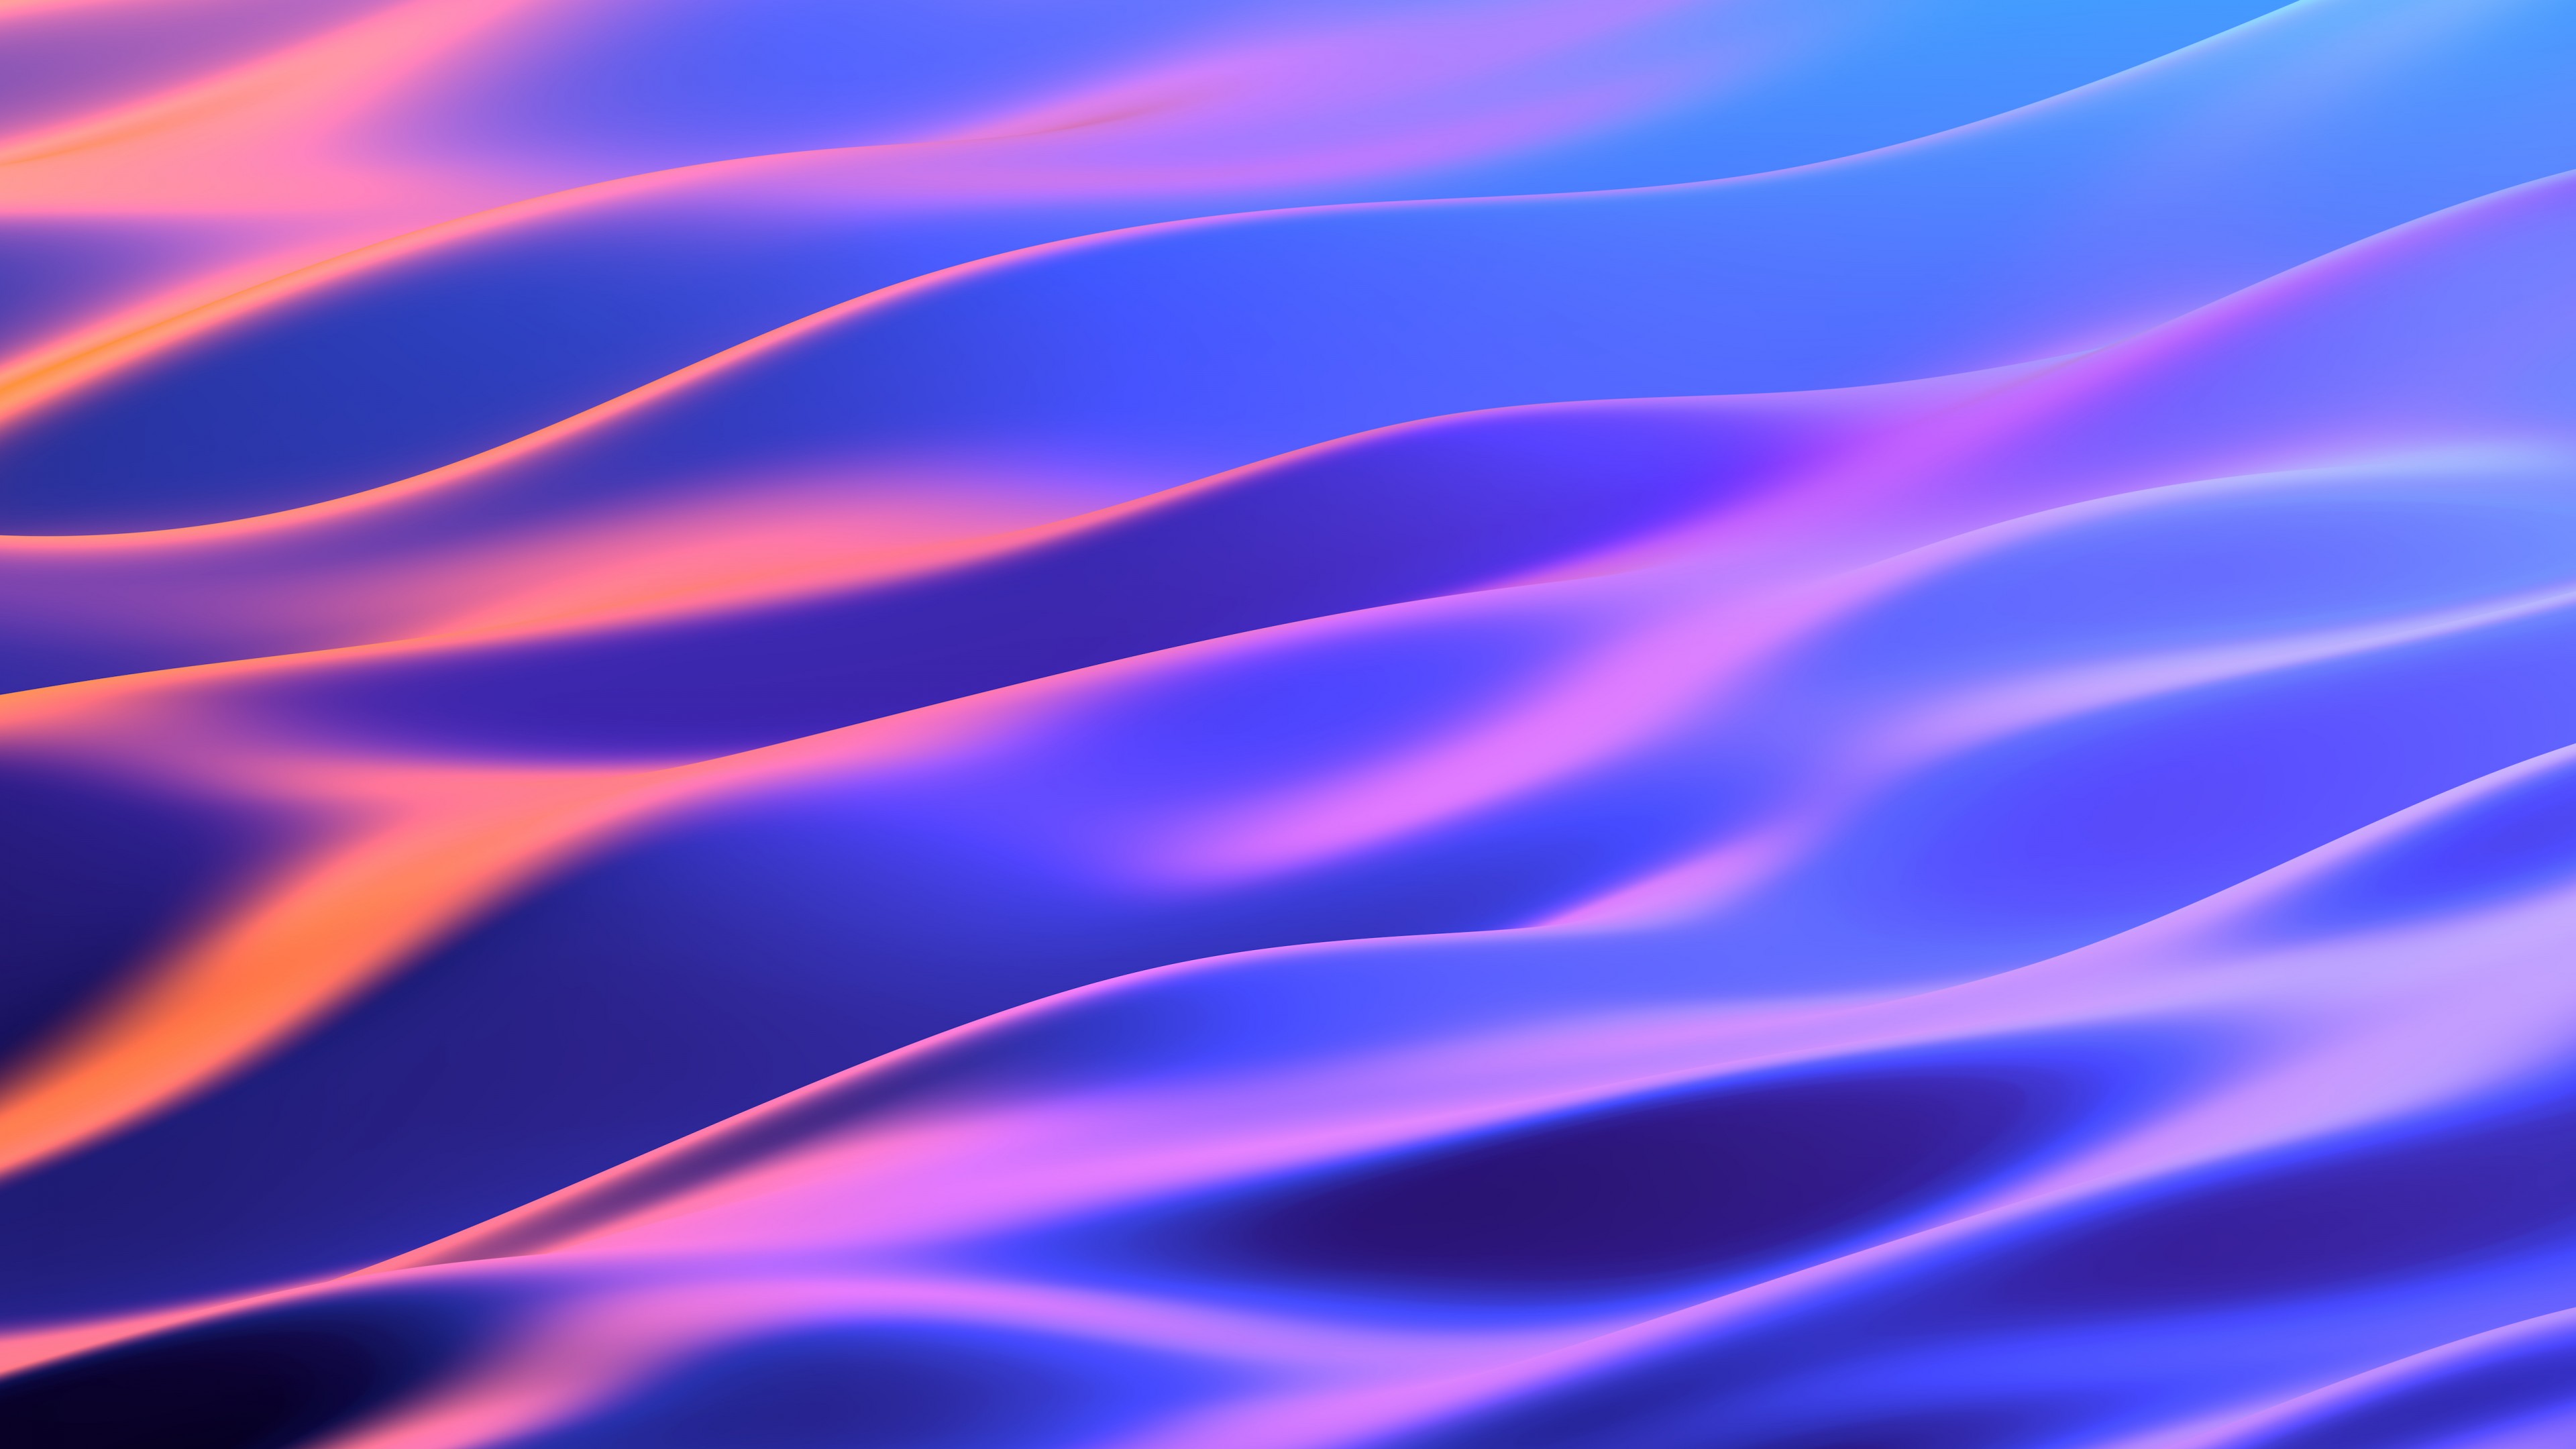 Purple waves [3840×2160]